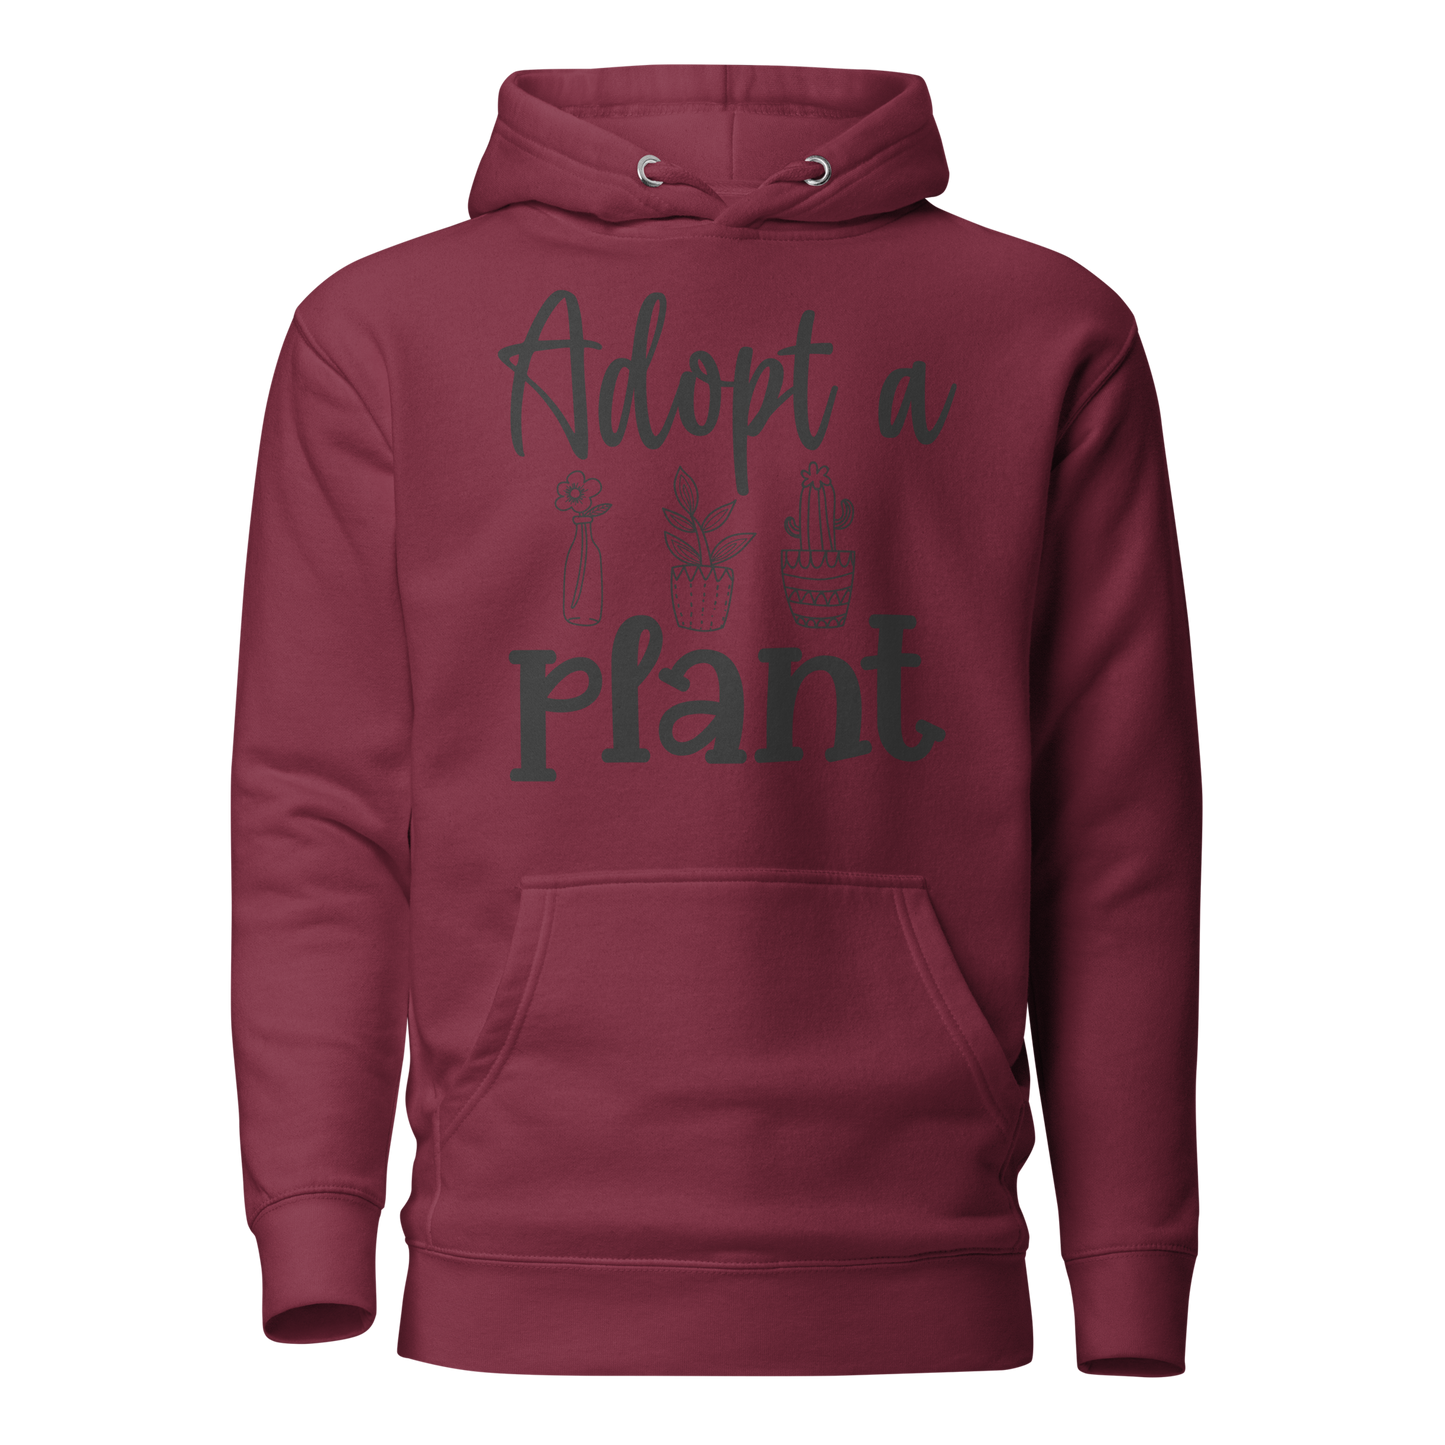 ADOPT A PLANT